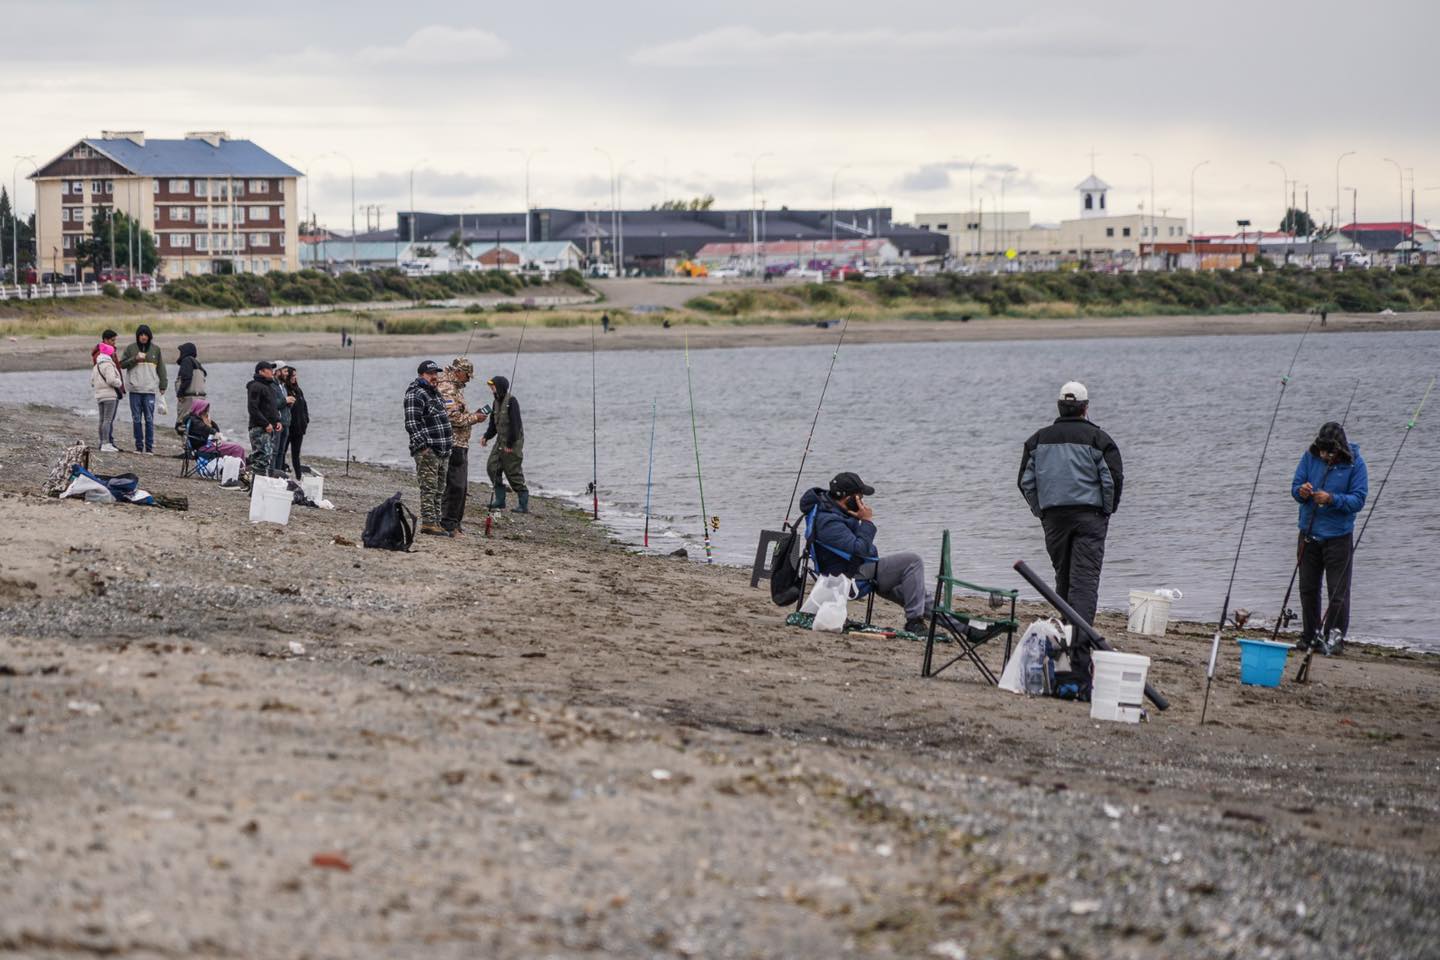 Exitoso Campeonato de Pesca se realizó en la Costanera del Estrecho de Magallanes | Organizó la Municipalidad de Punta Arenas